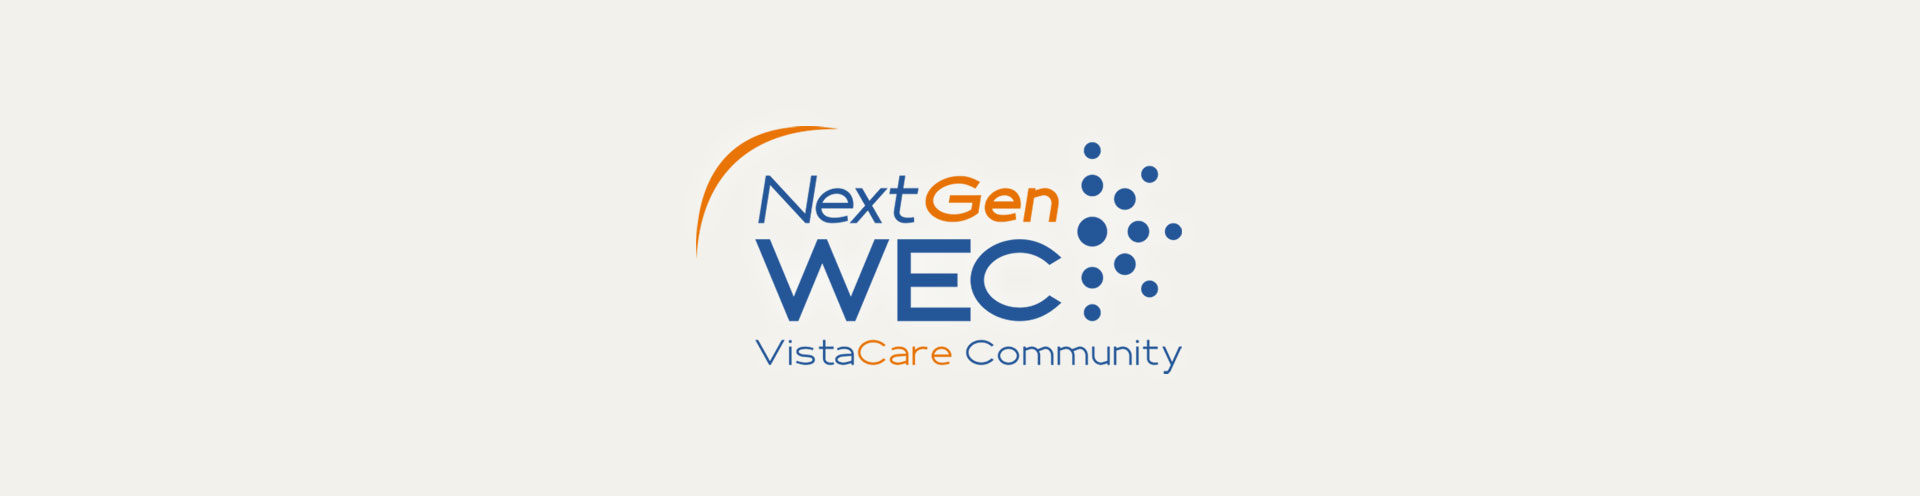 photo VistaCare logo NextGen WEC communauté par Code graphique